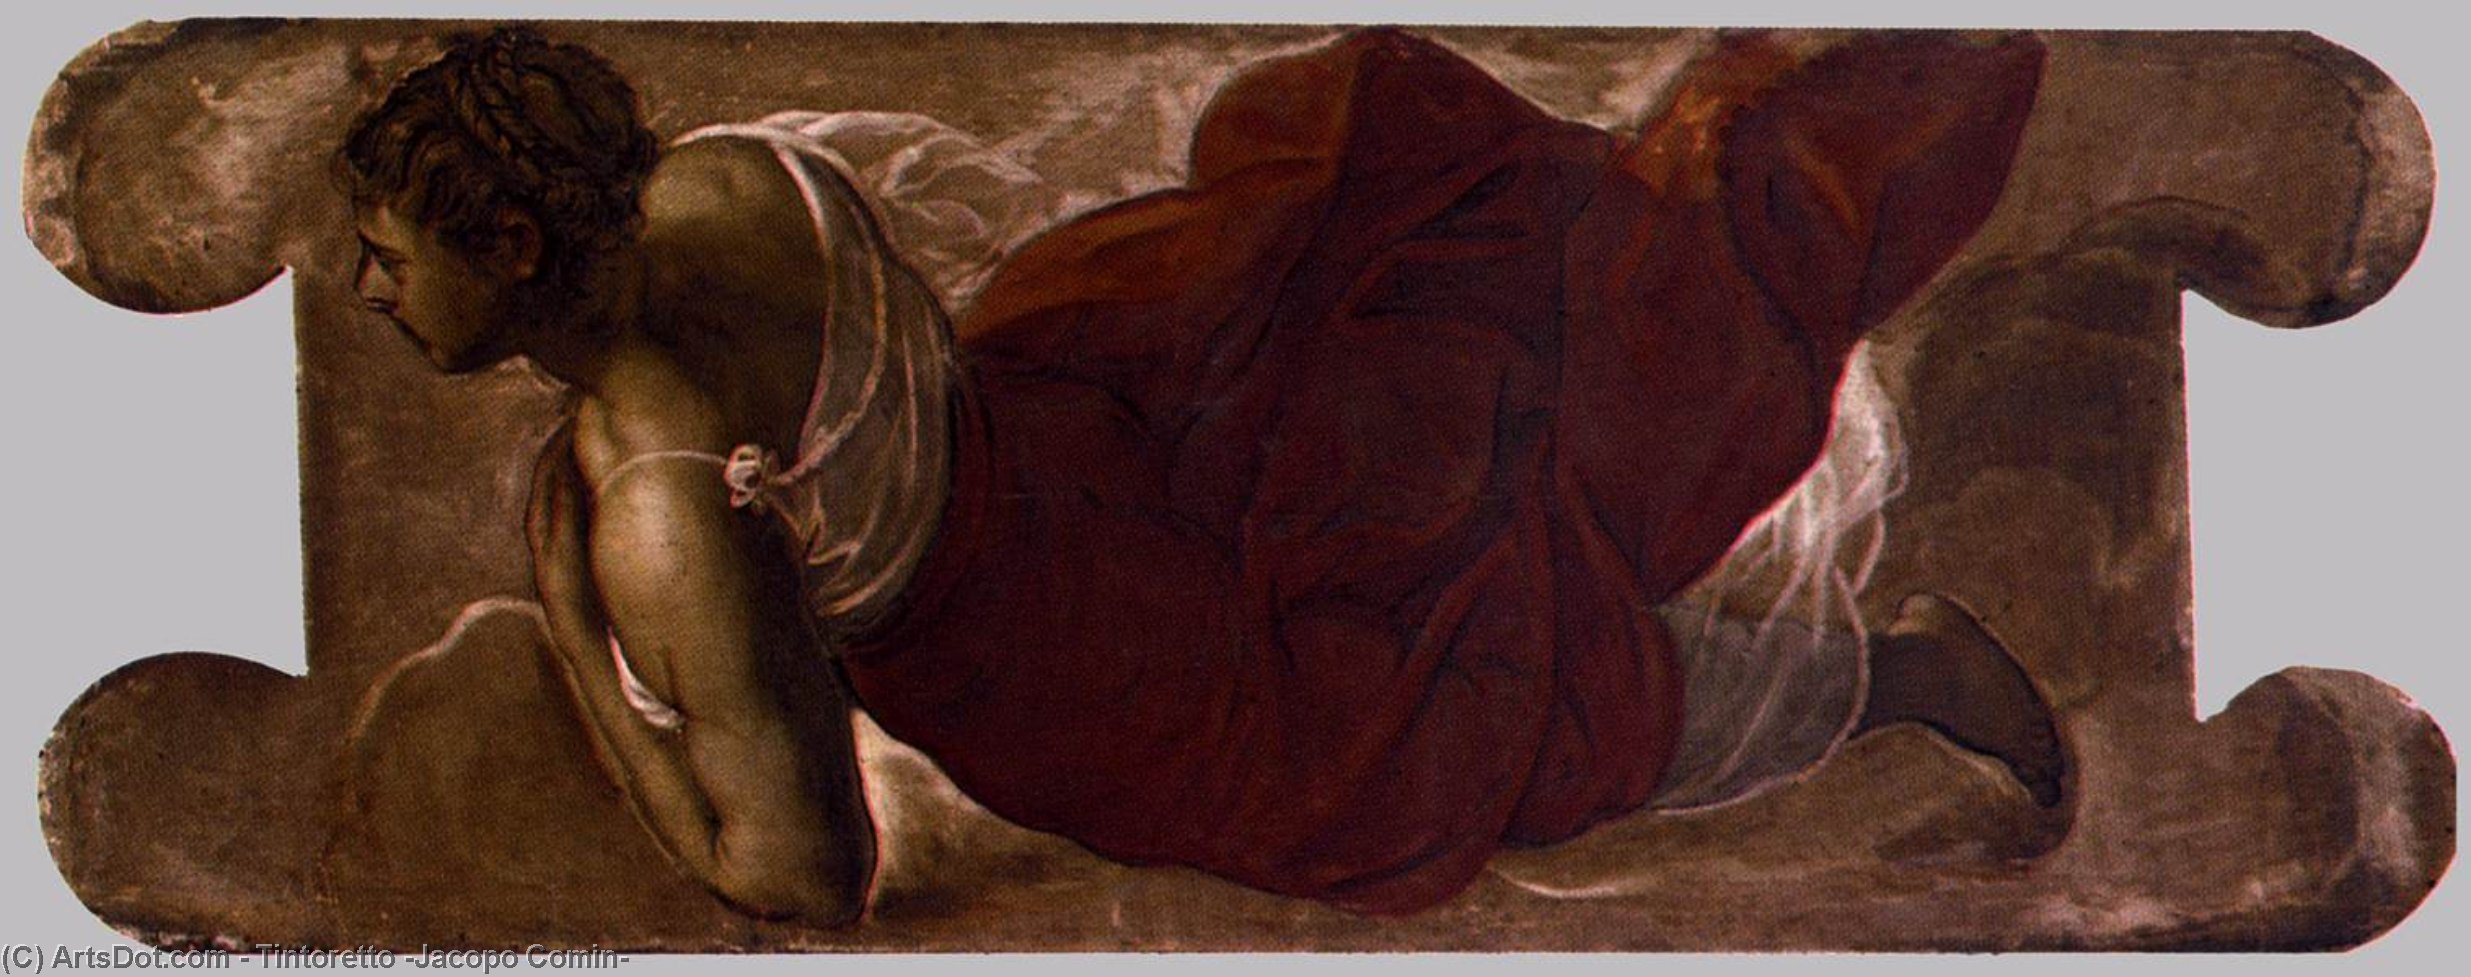 WikiOO.org - دایره المعارف هنرهای زیبا - نقاشی، آثار هنری Tintoretto (Jacopo Comin) - Female figure